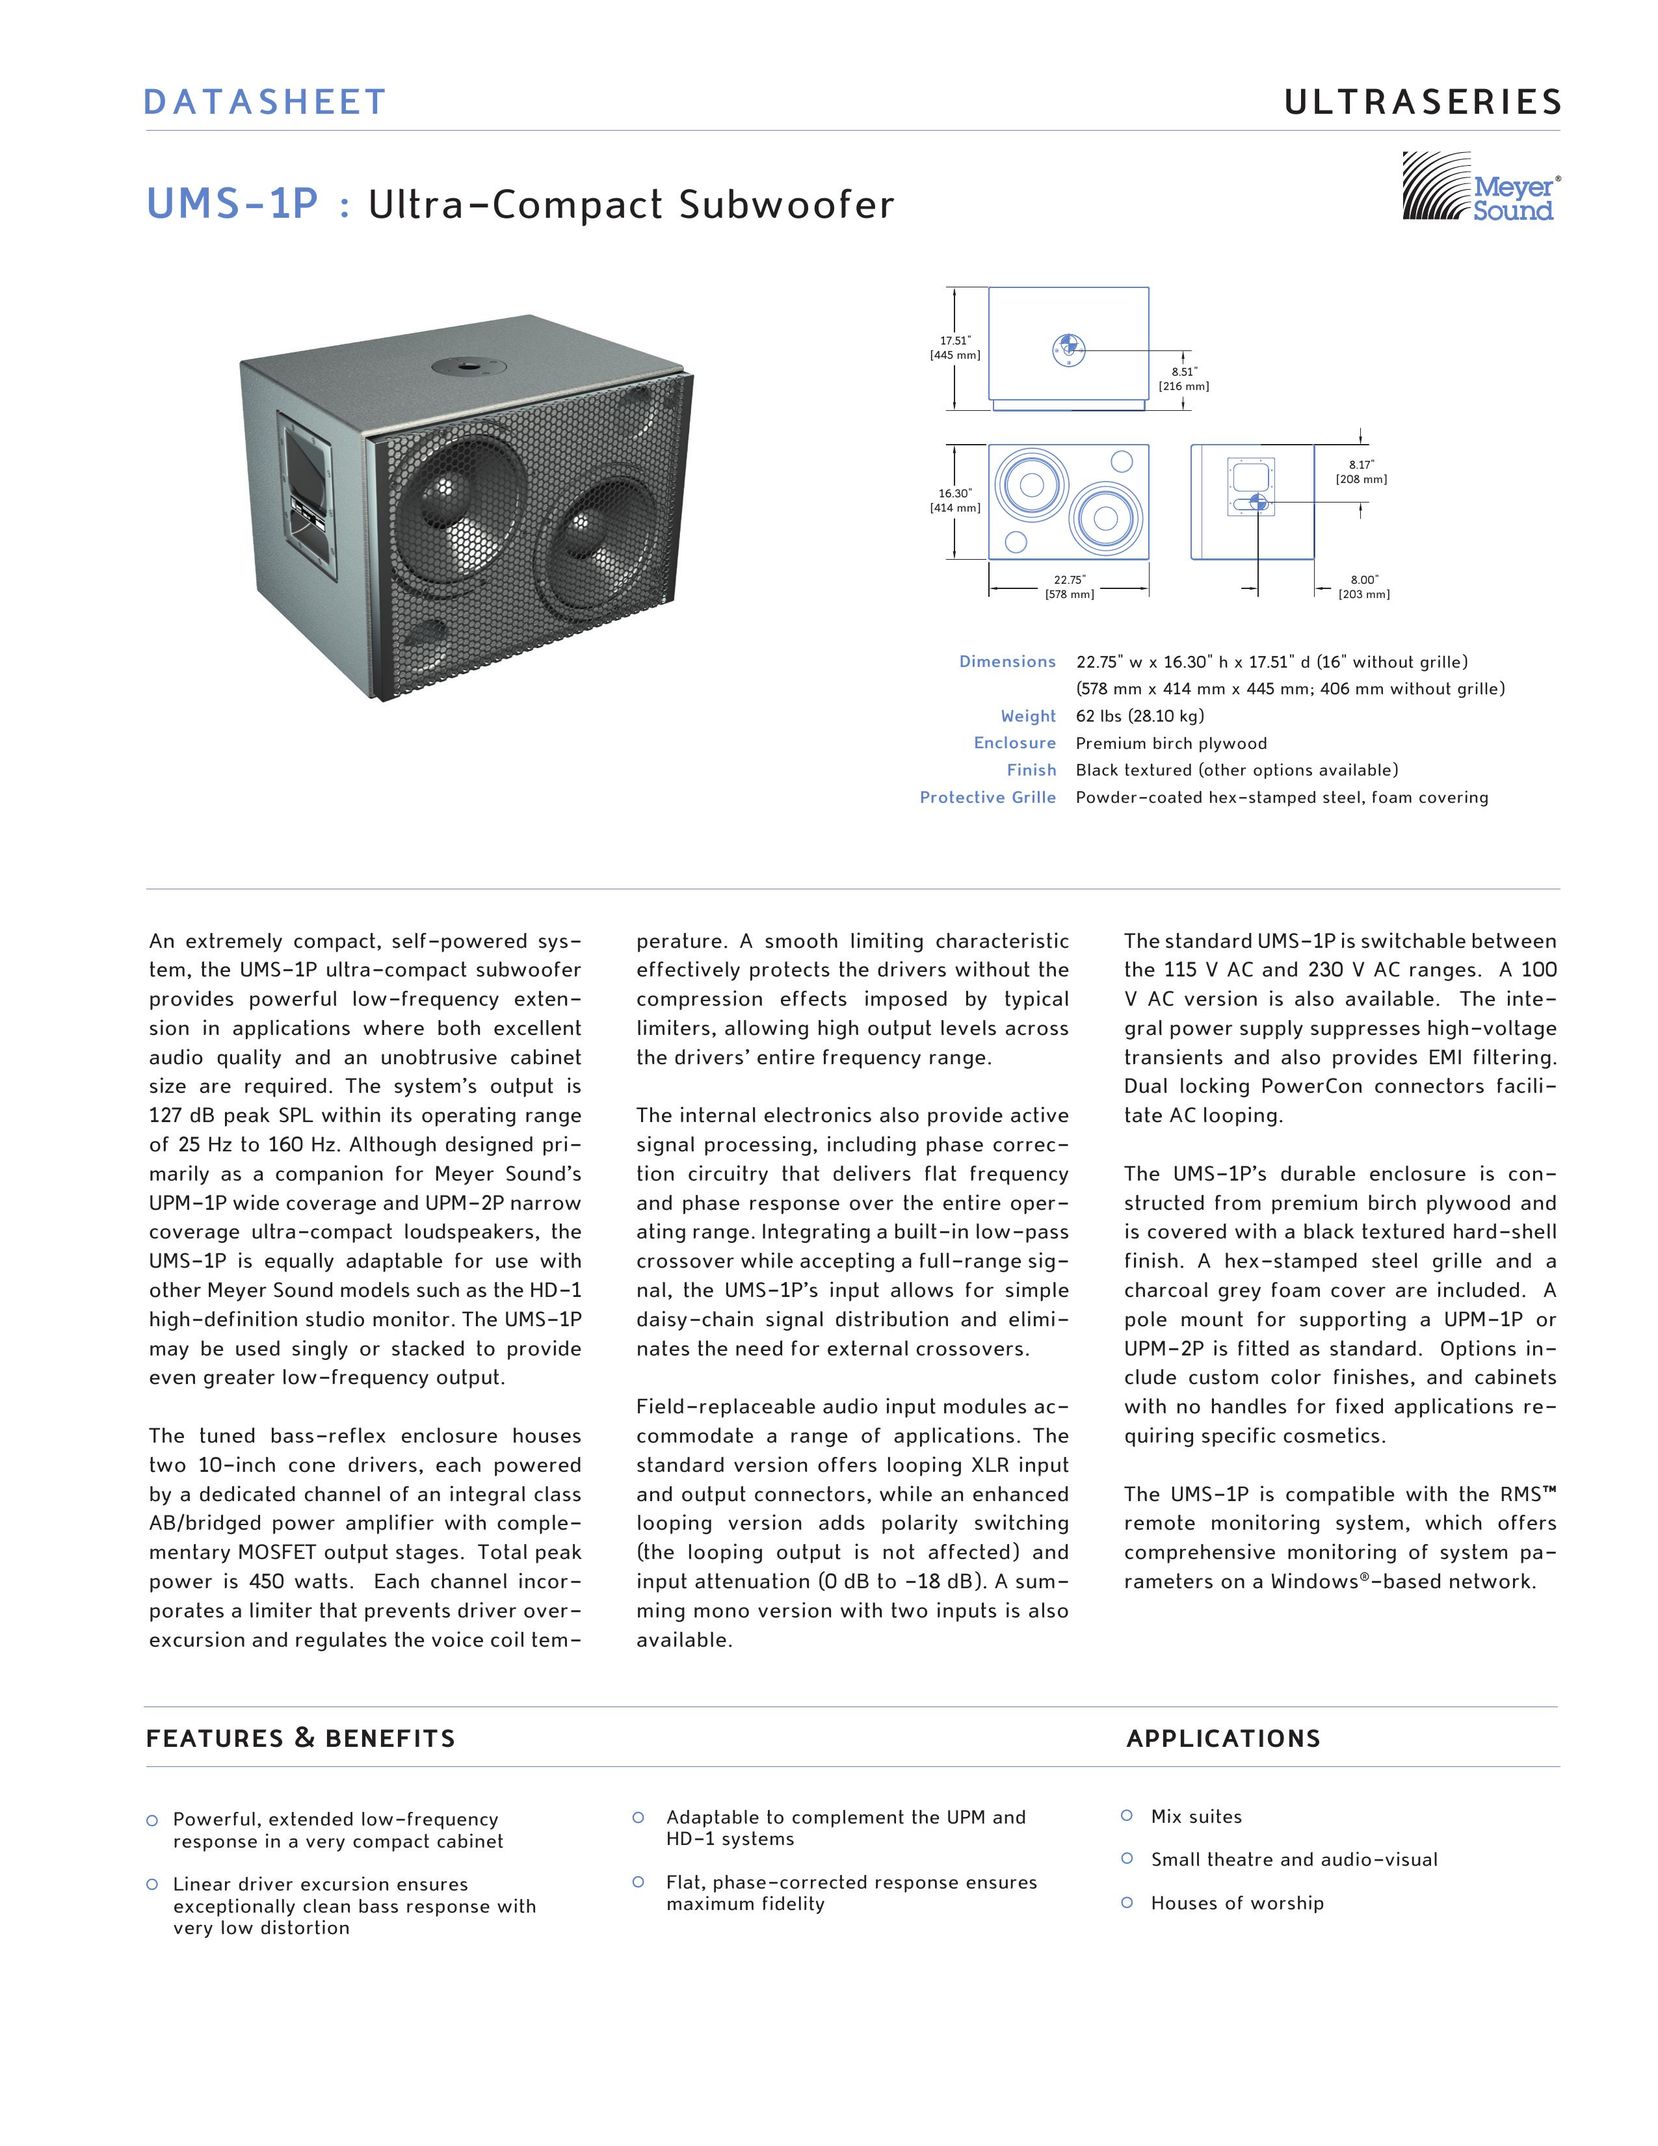 Meyer Sound UMS-1P Speaker User Manual